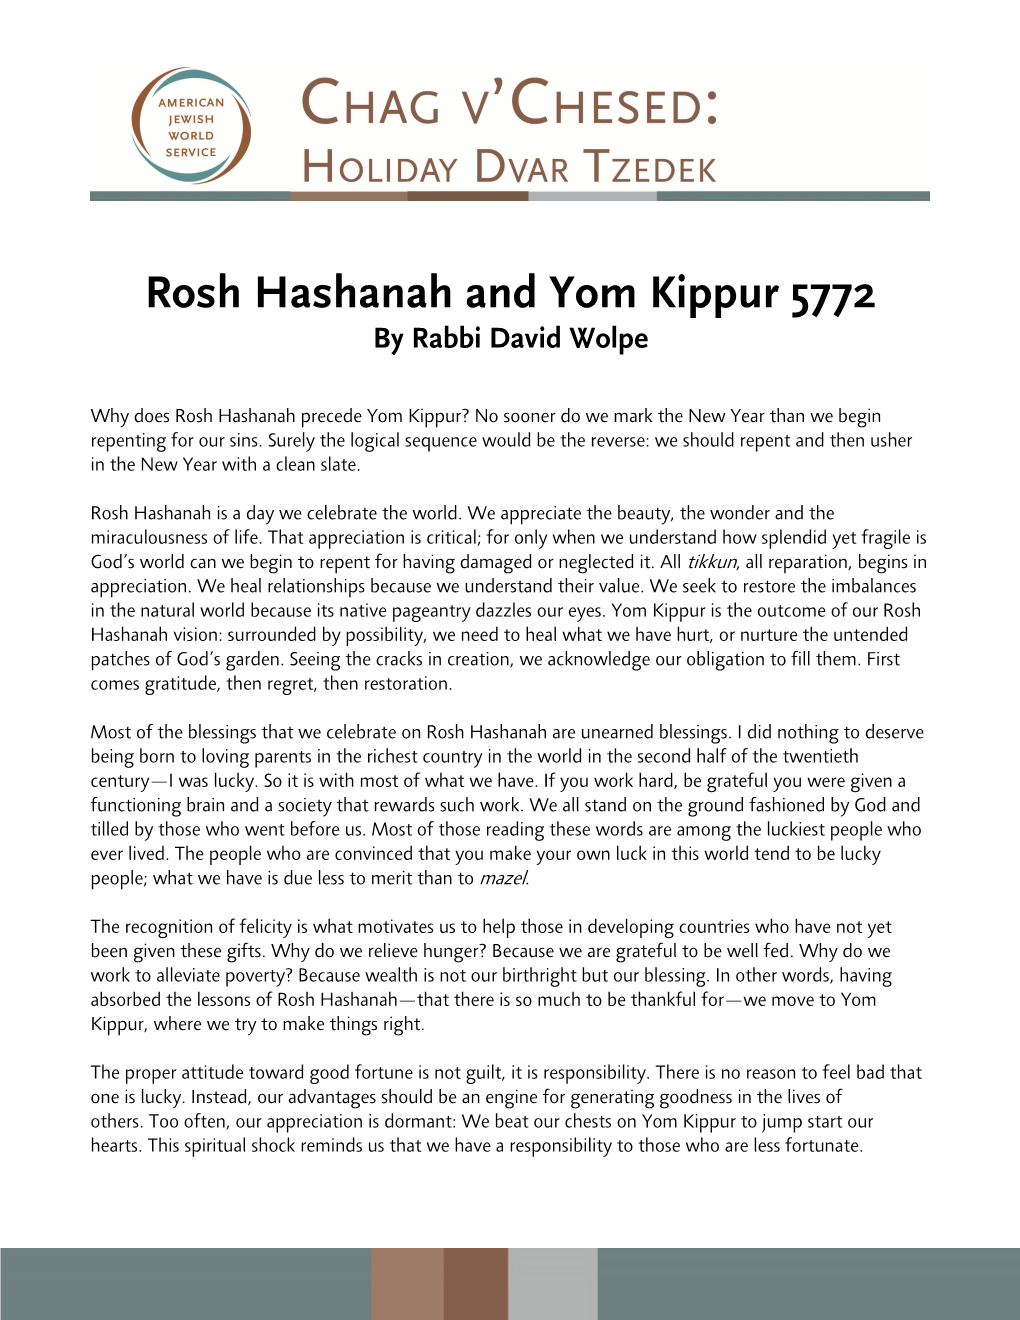 Rosh Hashanah and Yom Kippur 5772 by Rabbi David Wolpe